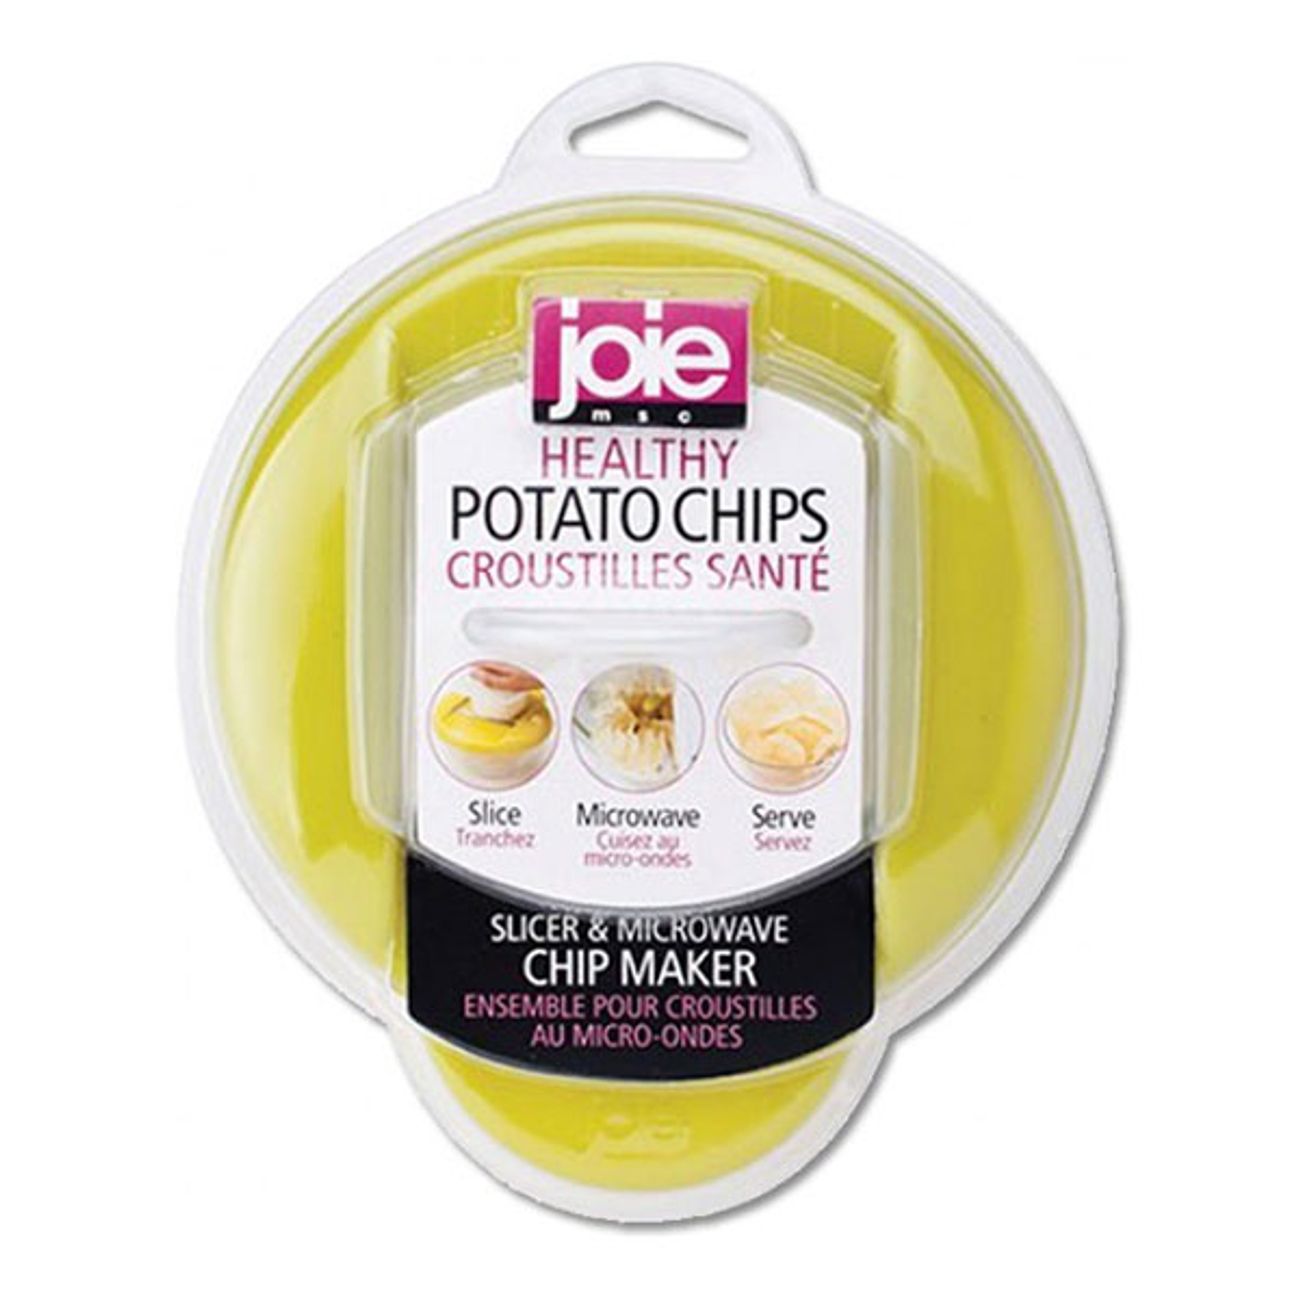 potato-chip-maker-5